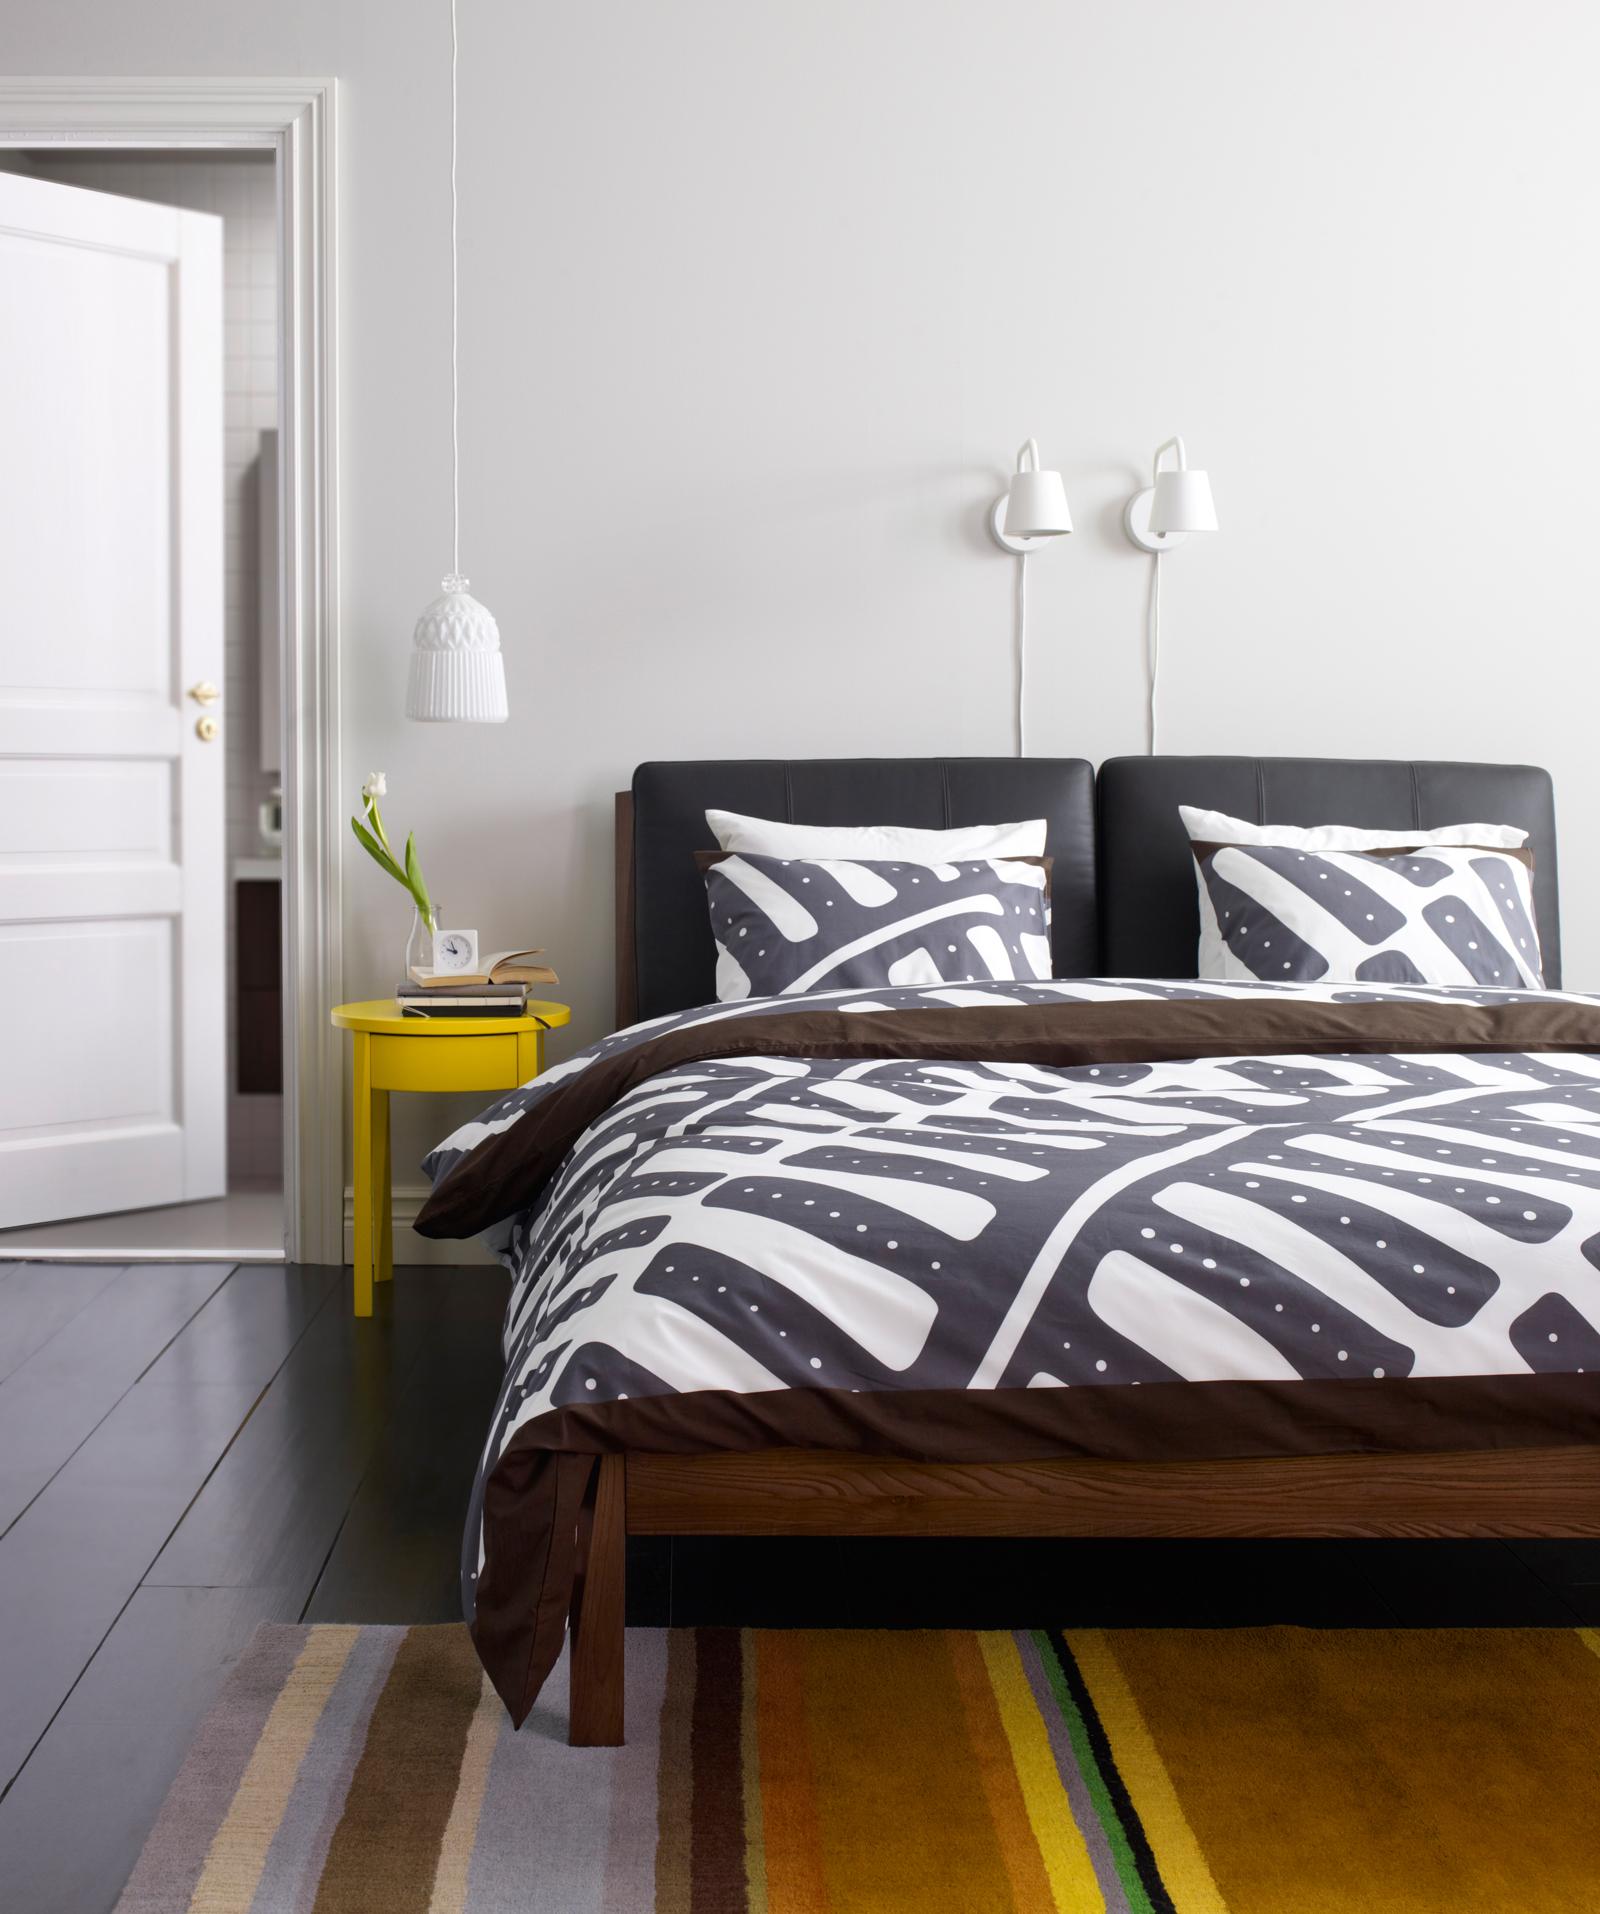 Musterbettwäsche und Streifenteppich #wandleuchte #ikea #pendelleuchte ©Inter IKEA Systems B.V.